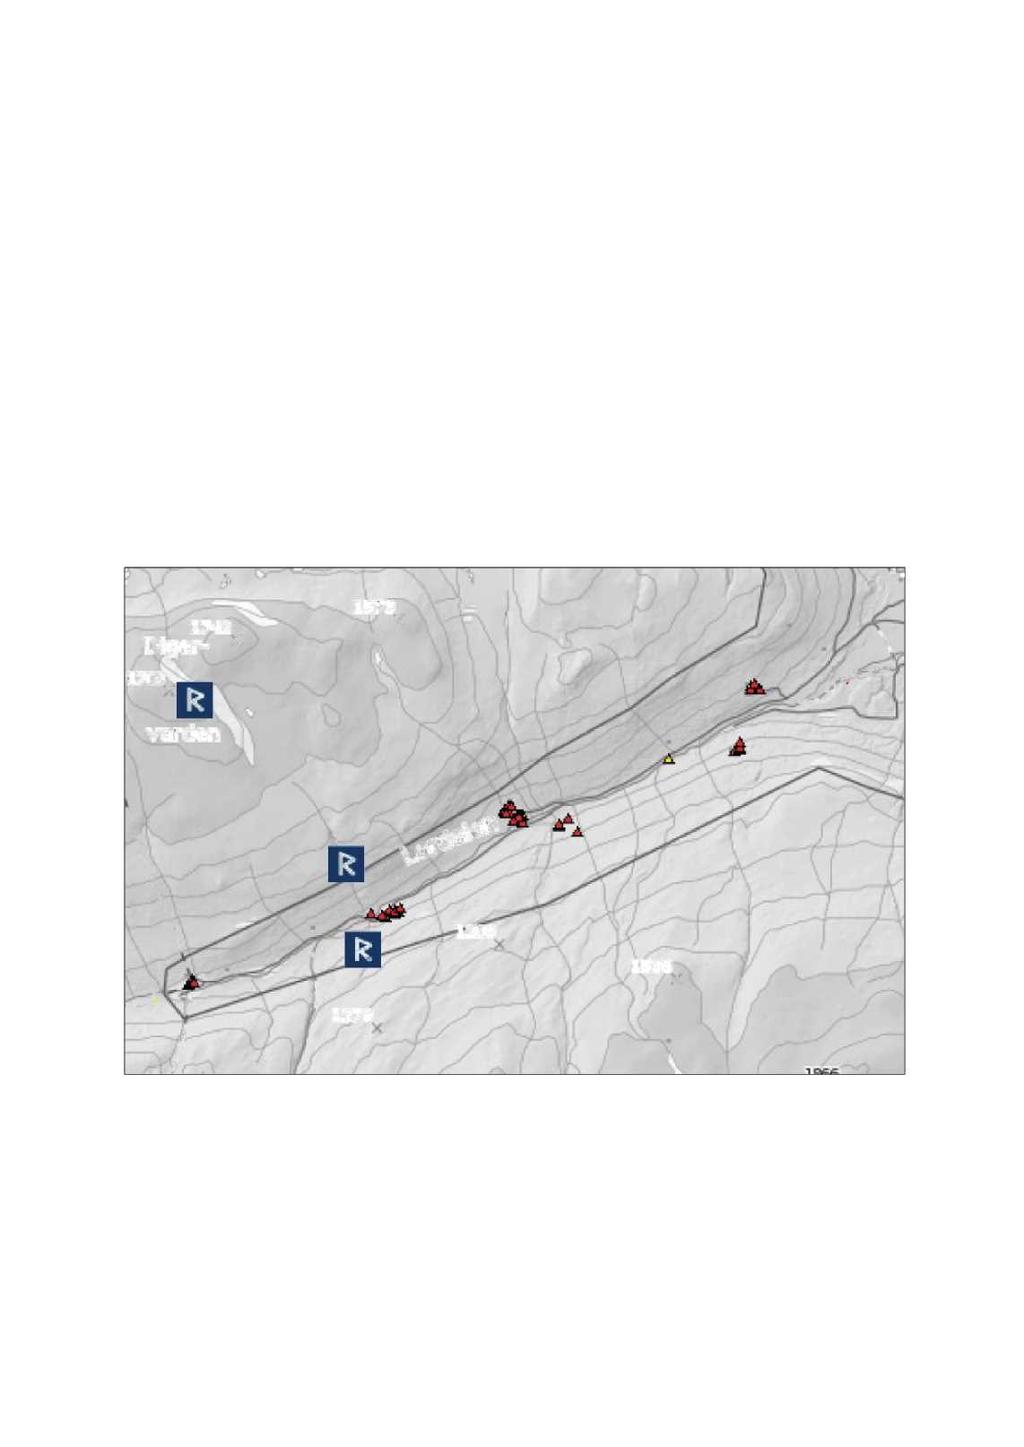 2.5 Hovudtrekk i plantelivet Vatne og Enzensberger (2012) omtaler plantelivet slik: «Gjennom den lange Lordalen graver elva Lora seg ned til Gudbrandsdalslågen i sørvestlignordøstlig retning.